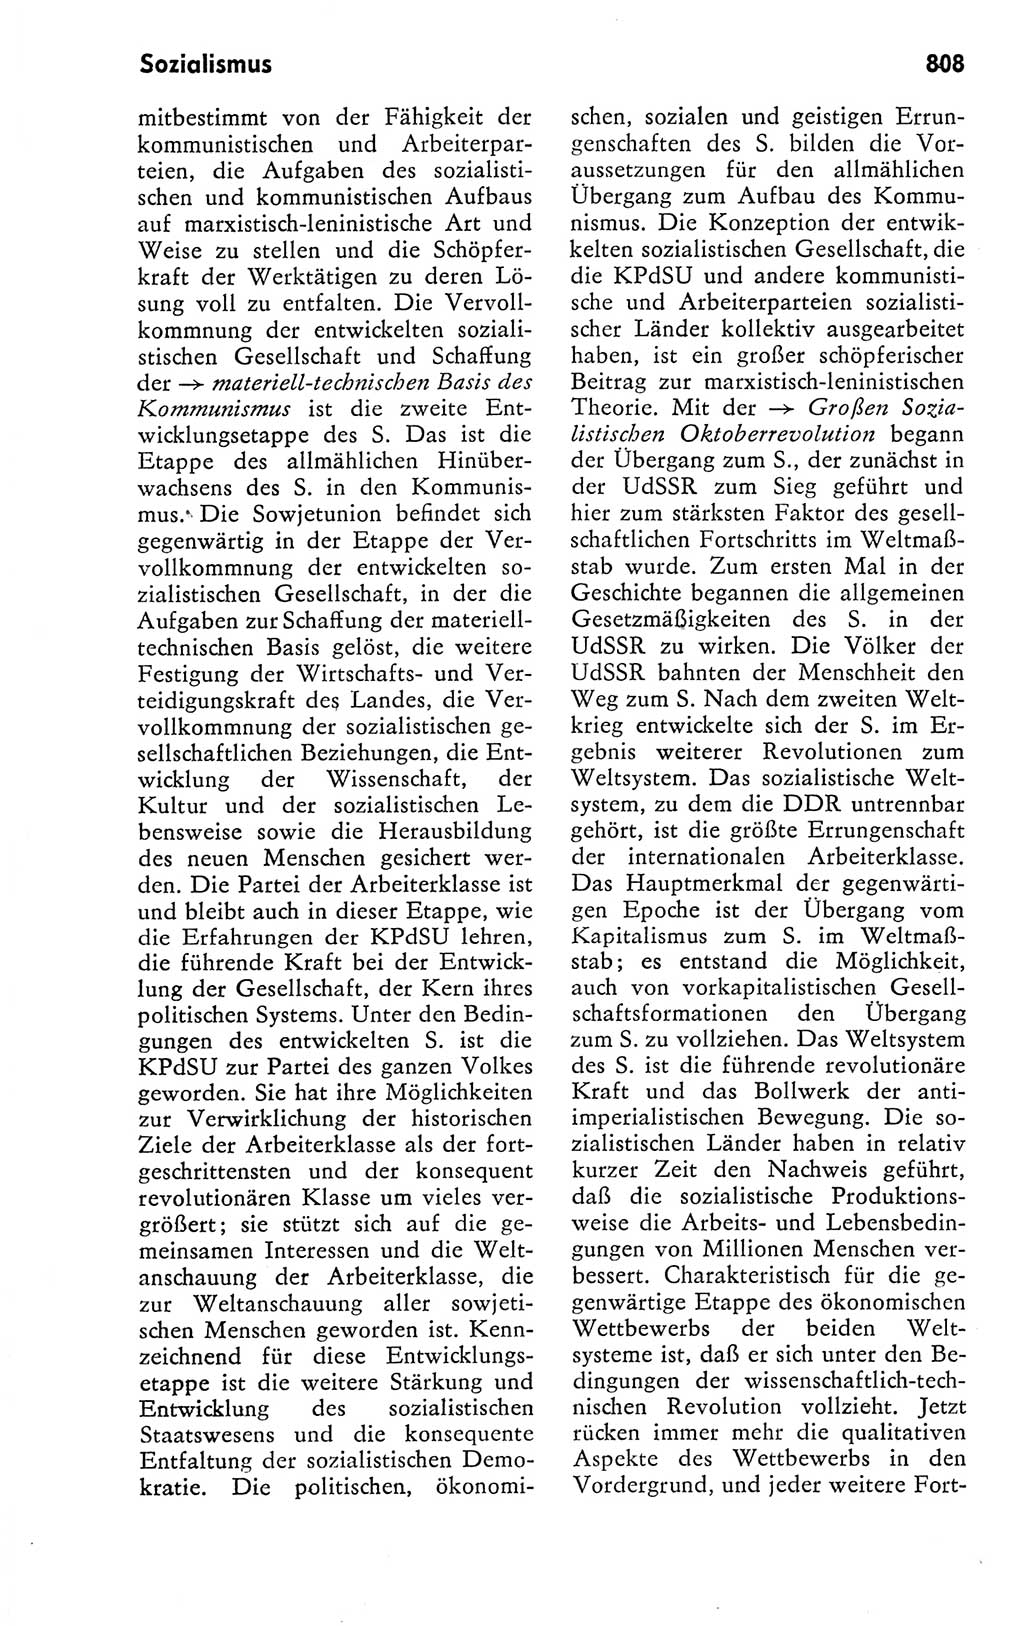 Kleines politisches Wörterbuch [Deutsche Demokratische Republik (DDR)] 1978, Seite 808 (Kl. pol. Wb. DDR 1978, S. 808)